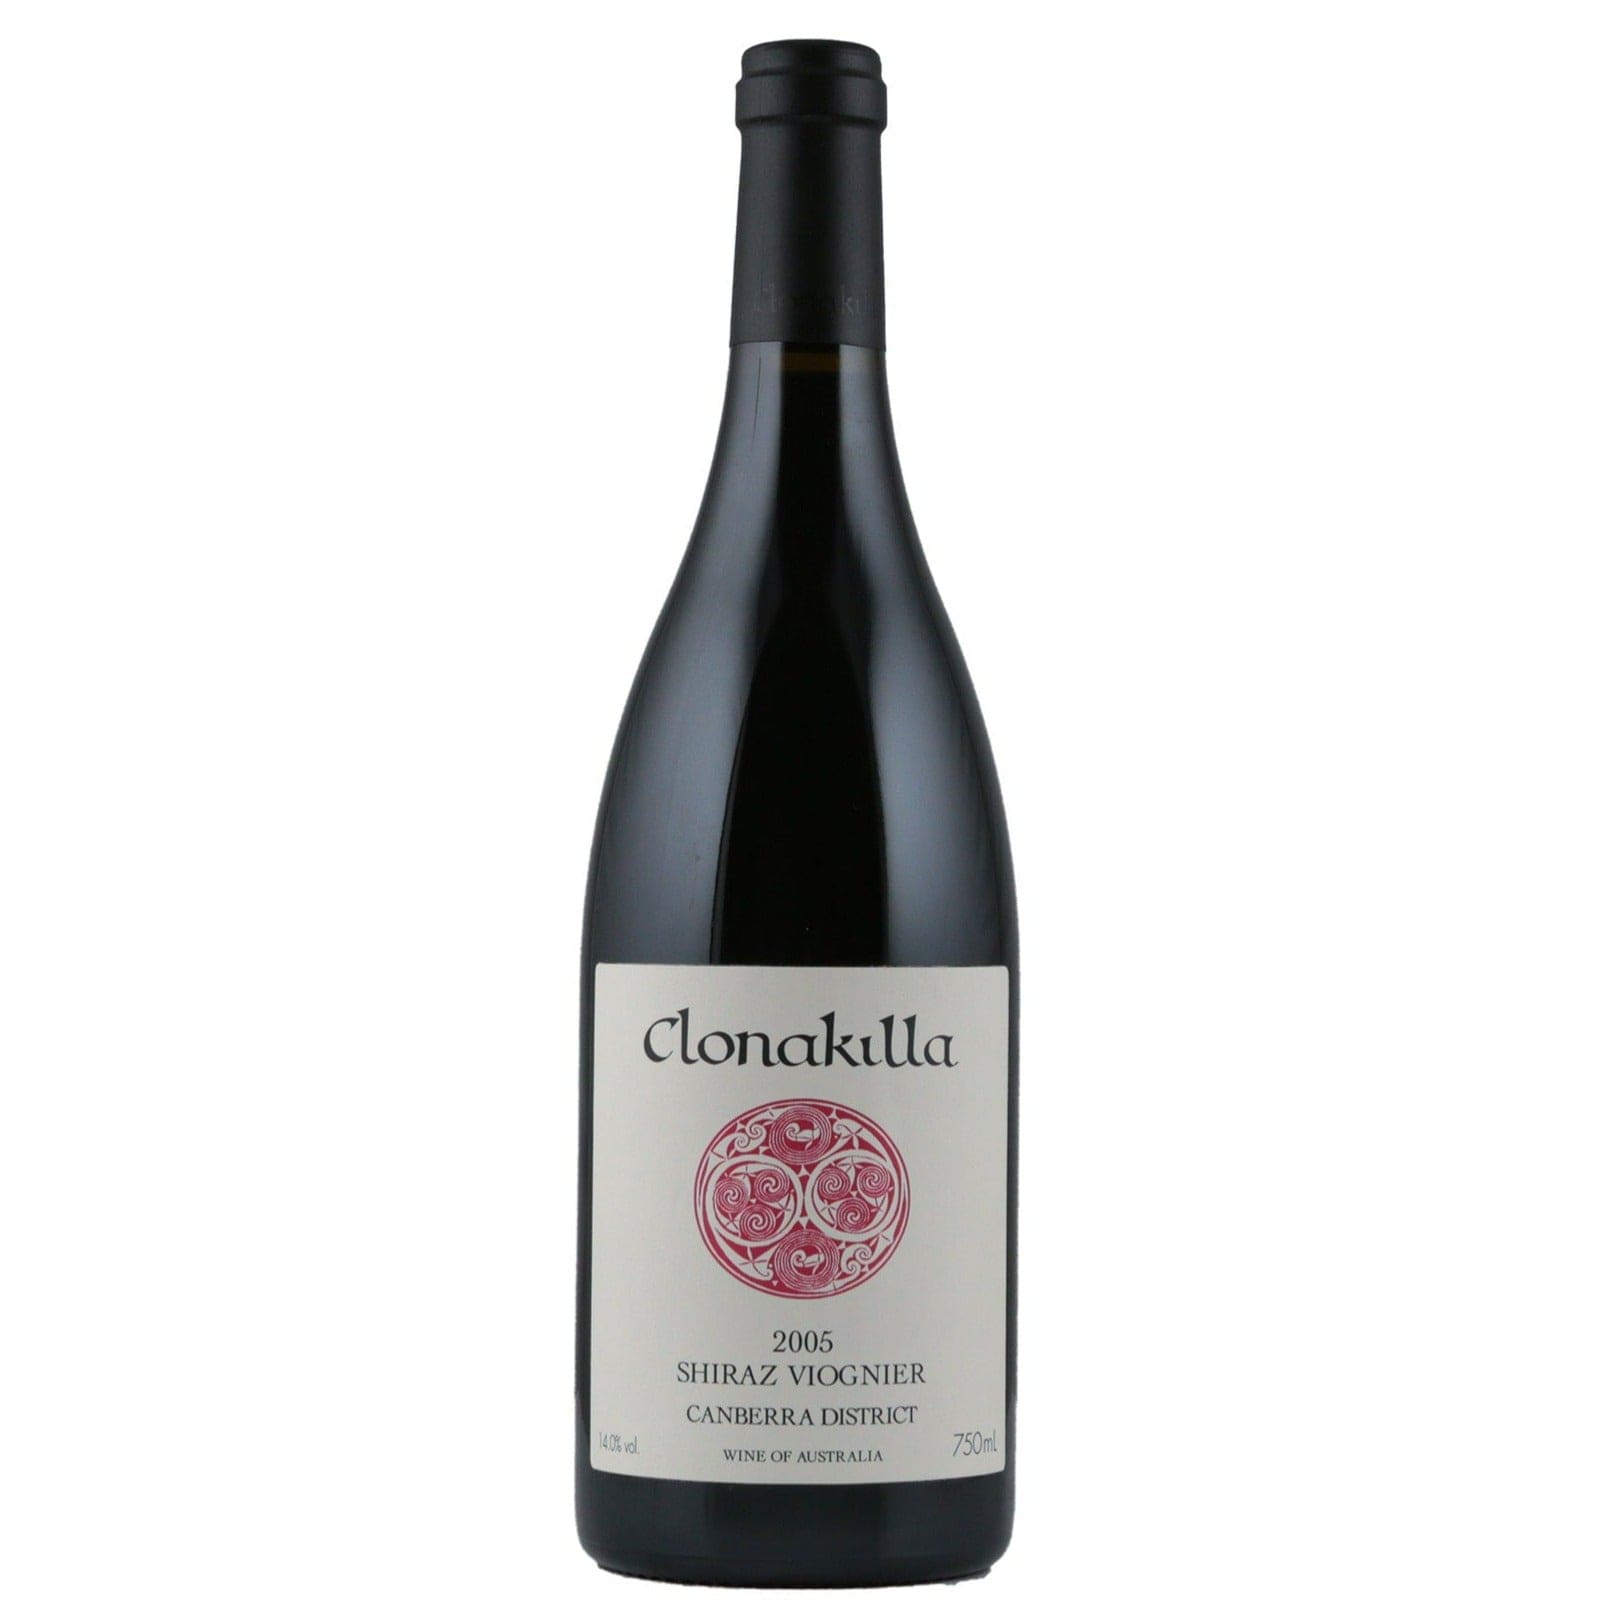 Single bottle of Red wine Clonakilla, Shiraz-Viognier Canberra District, 2005 95% Shiraz, 5% Viognier